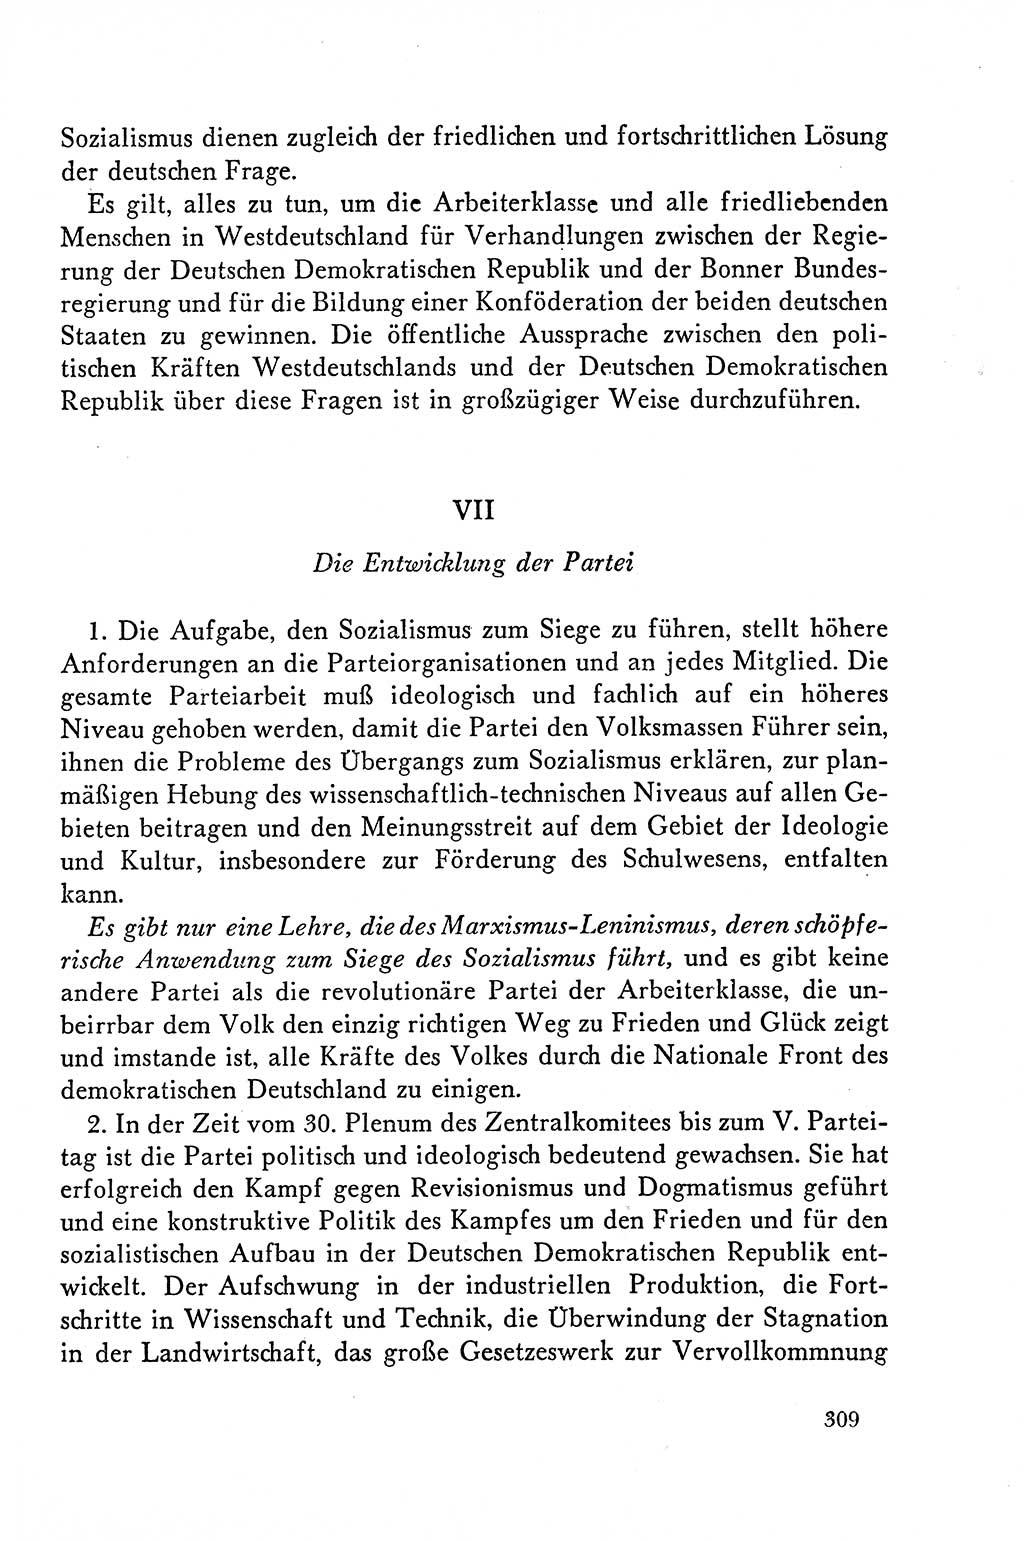 Dokumente der Sozialistischen Einheitspartei Deutschlands (SED) [Deutsche Demokratische Republik (DDR)] 1958-1959, Seite 309 (Dok. SED DDR 1958-1959, S. 309)